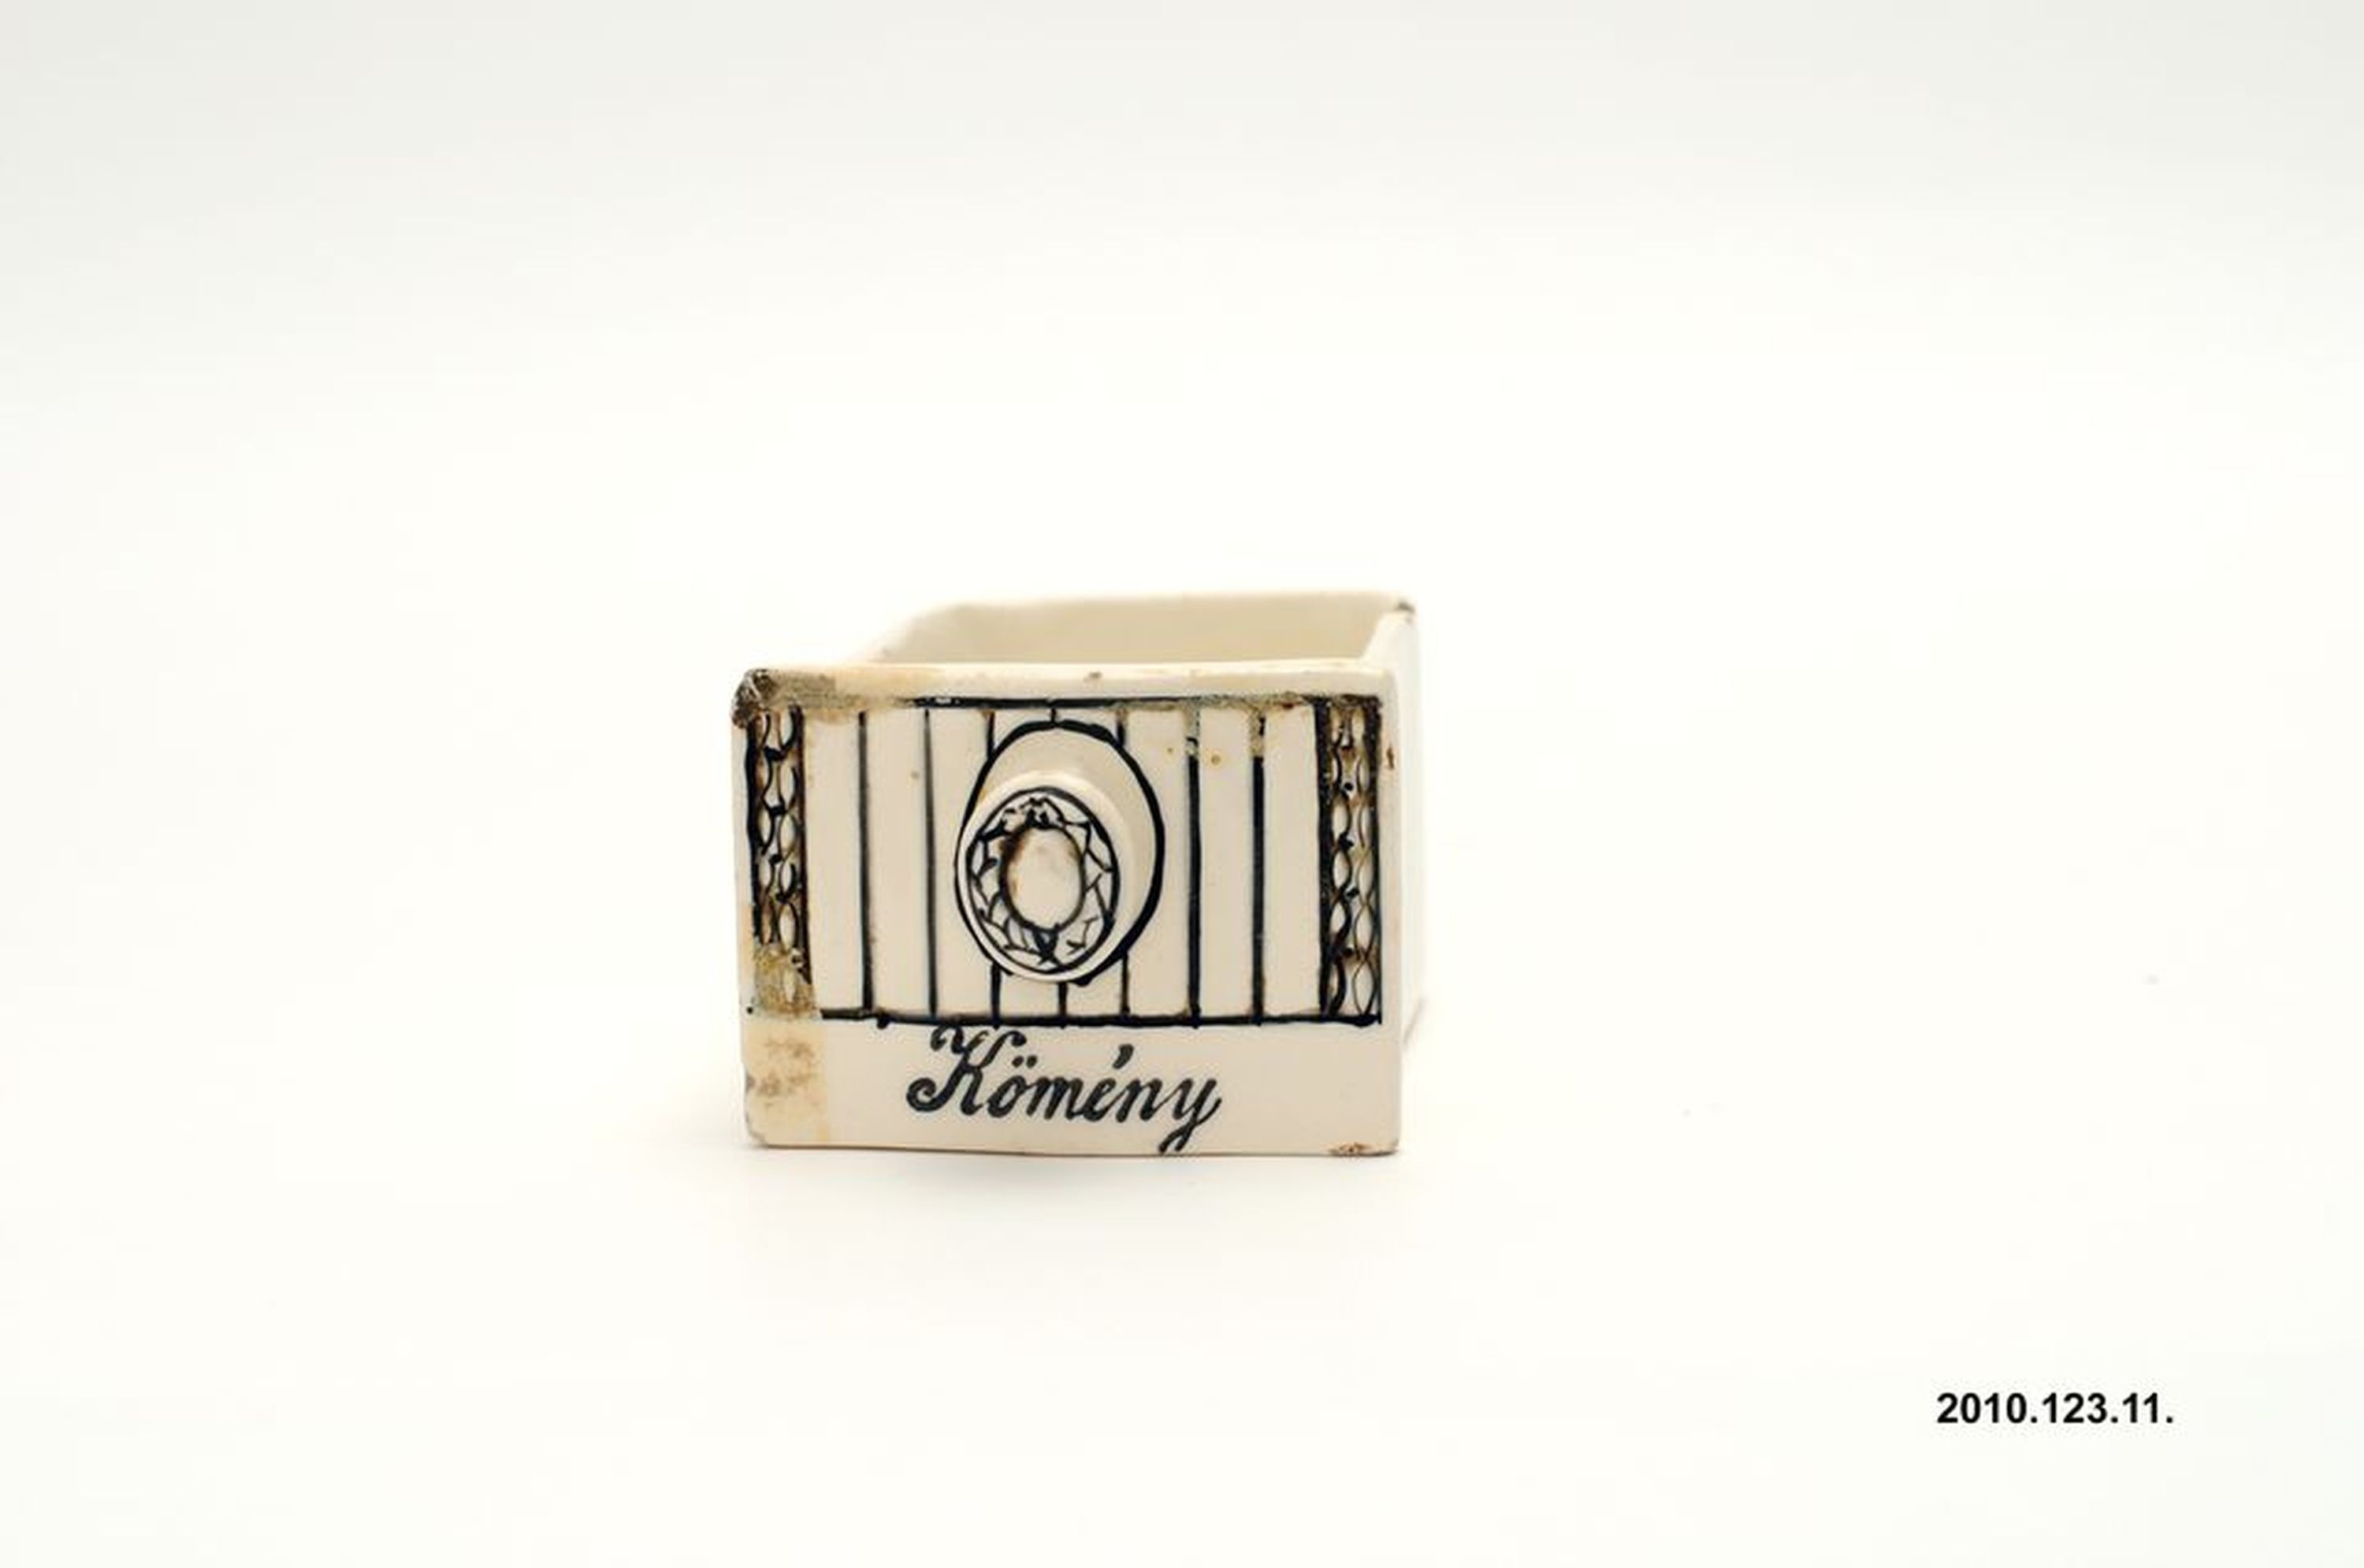 Kerámia fűszertartó fiók "Kömény" felirattal (Óbudai Múzeum CC BY-NC-SA)